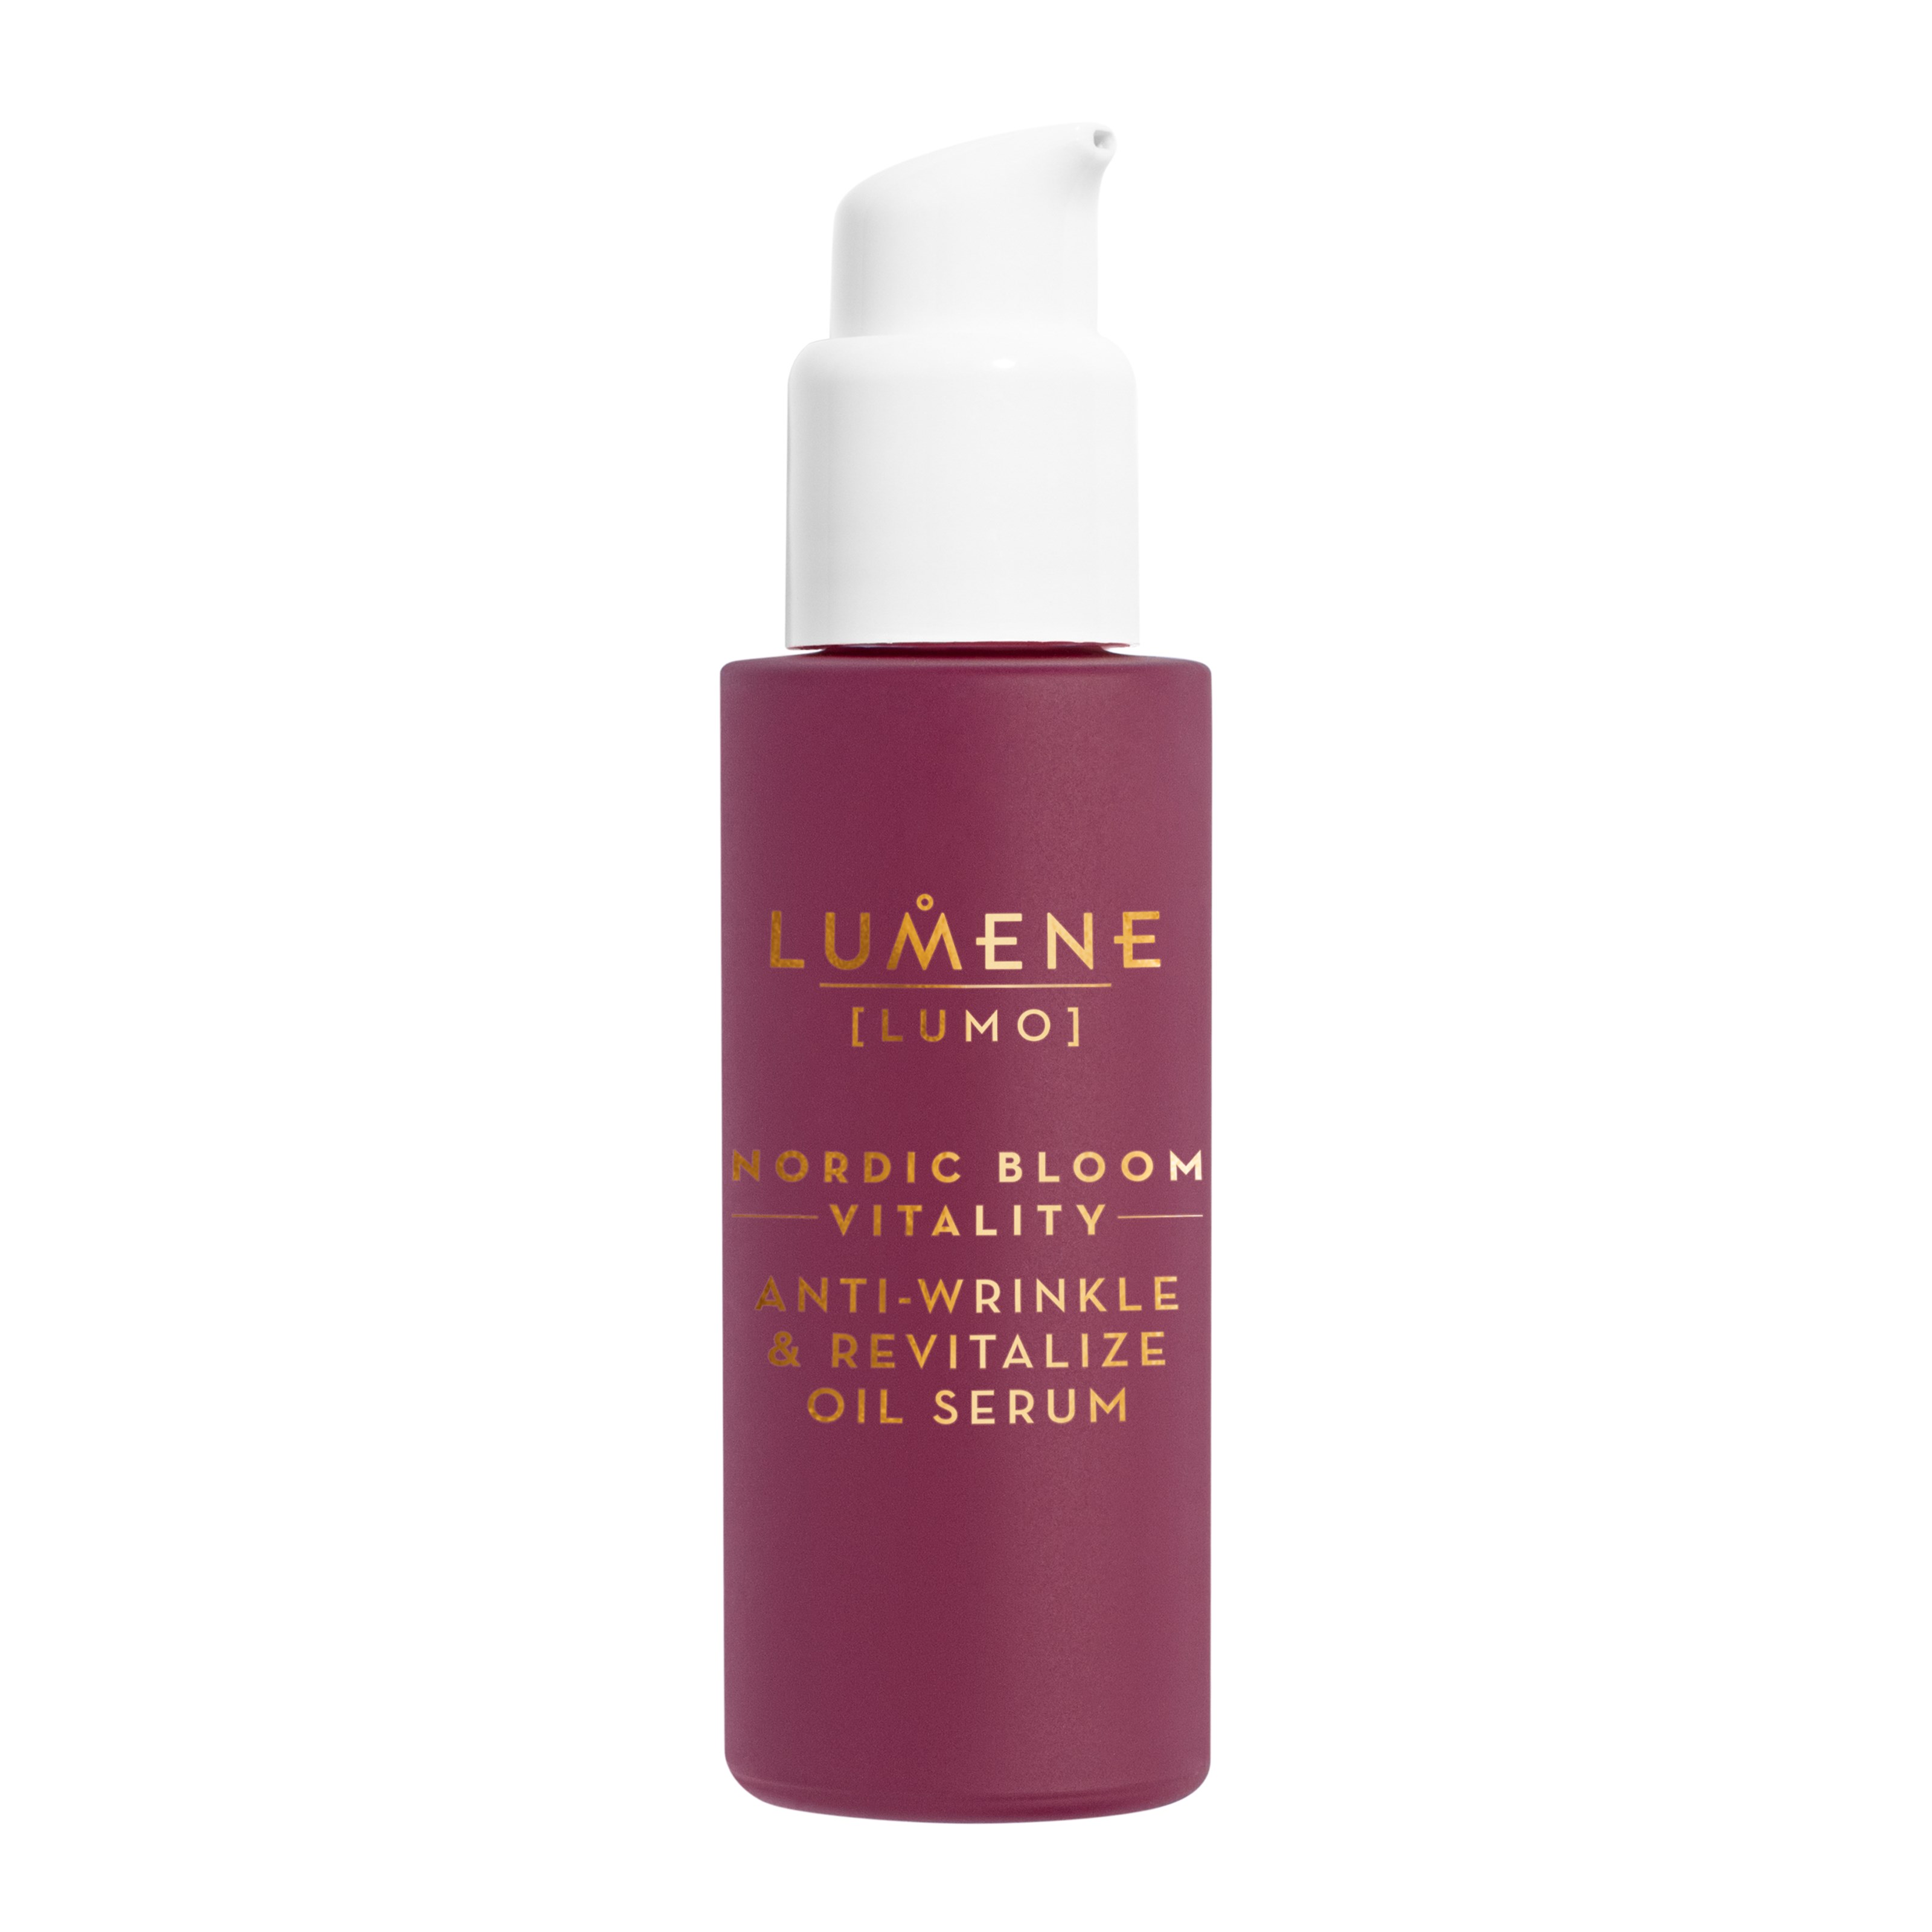 Bilde av Lumene Nordic Bloom Vitality Anti-wrinkle & Revitalize Oil Serum 30 Ml